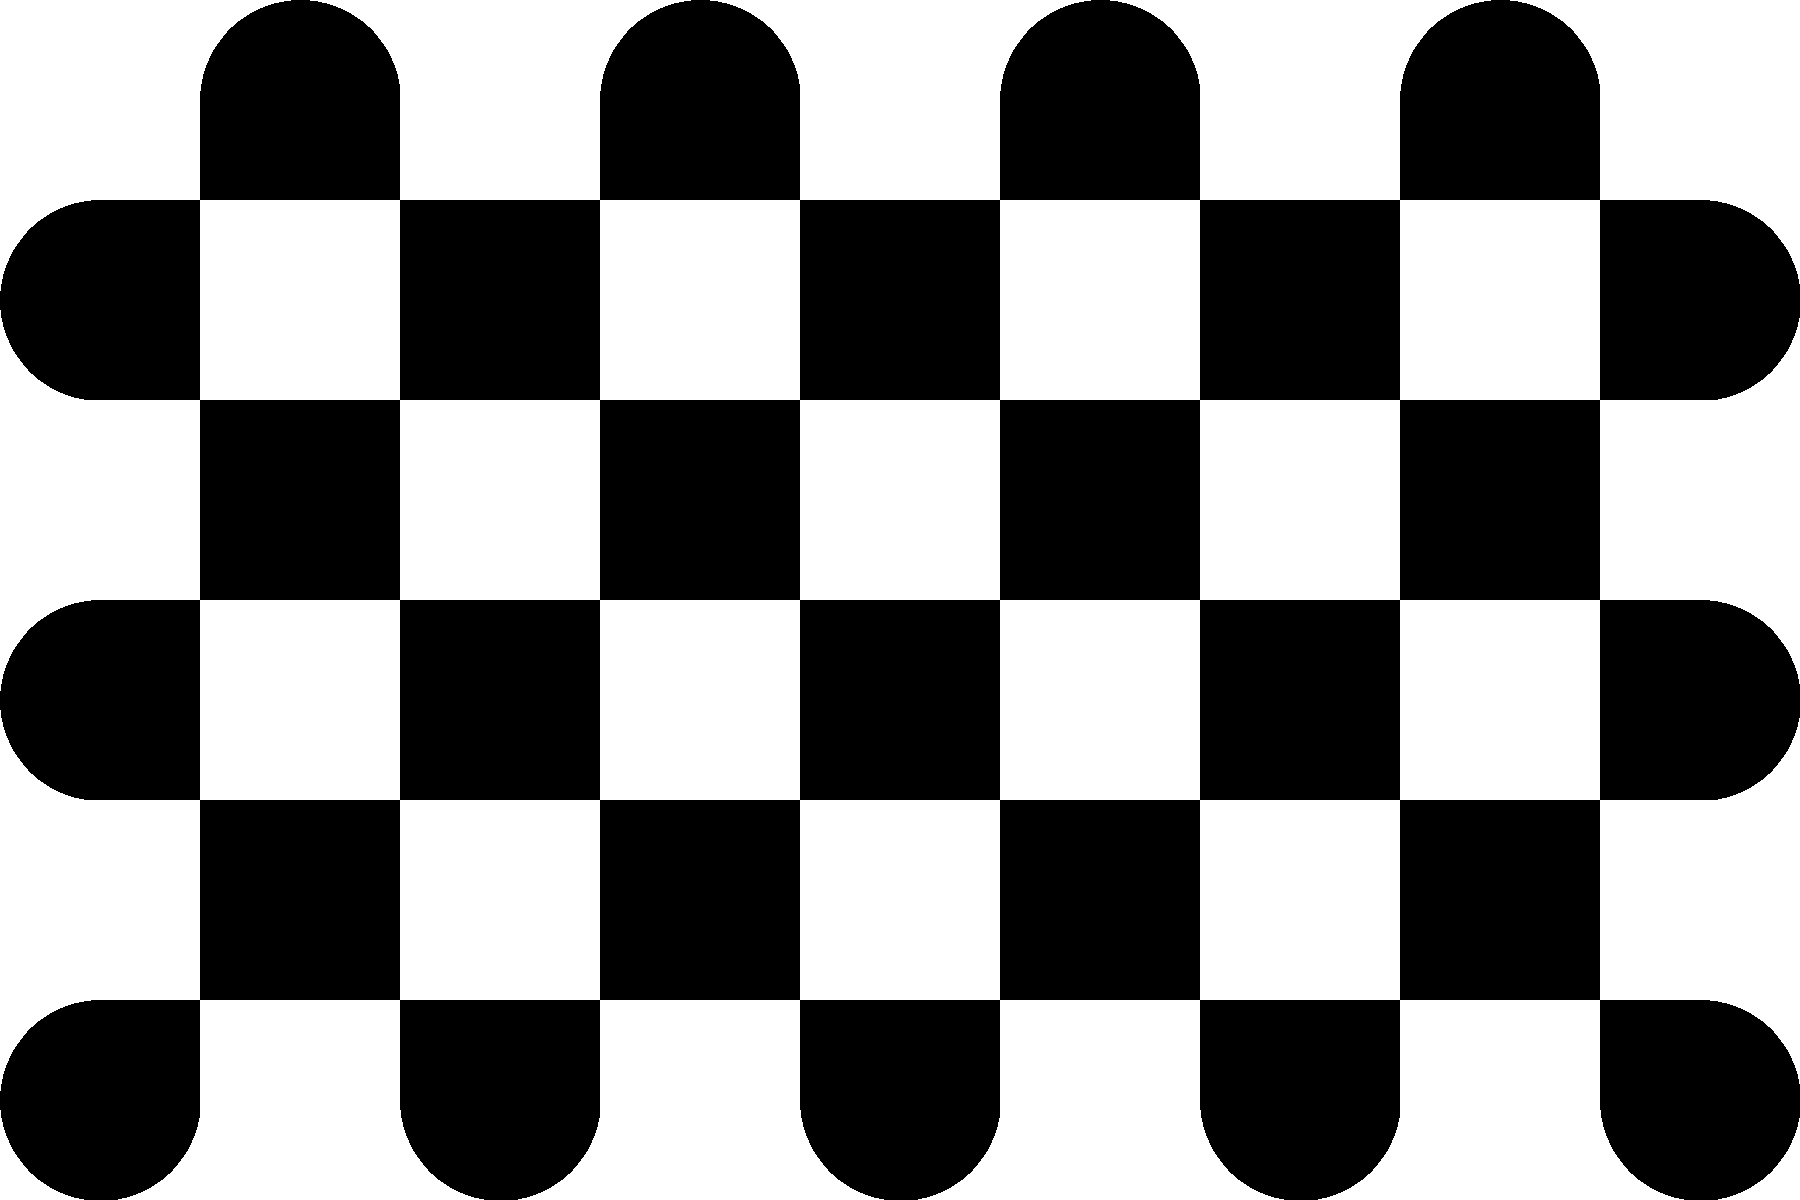 checkerboard_radon.png